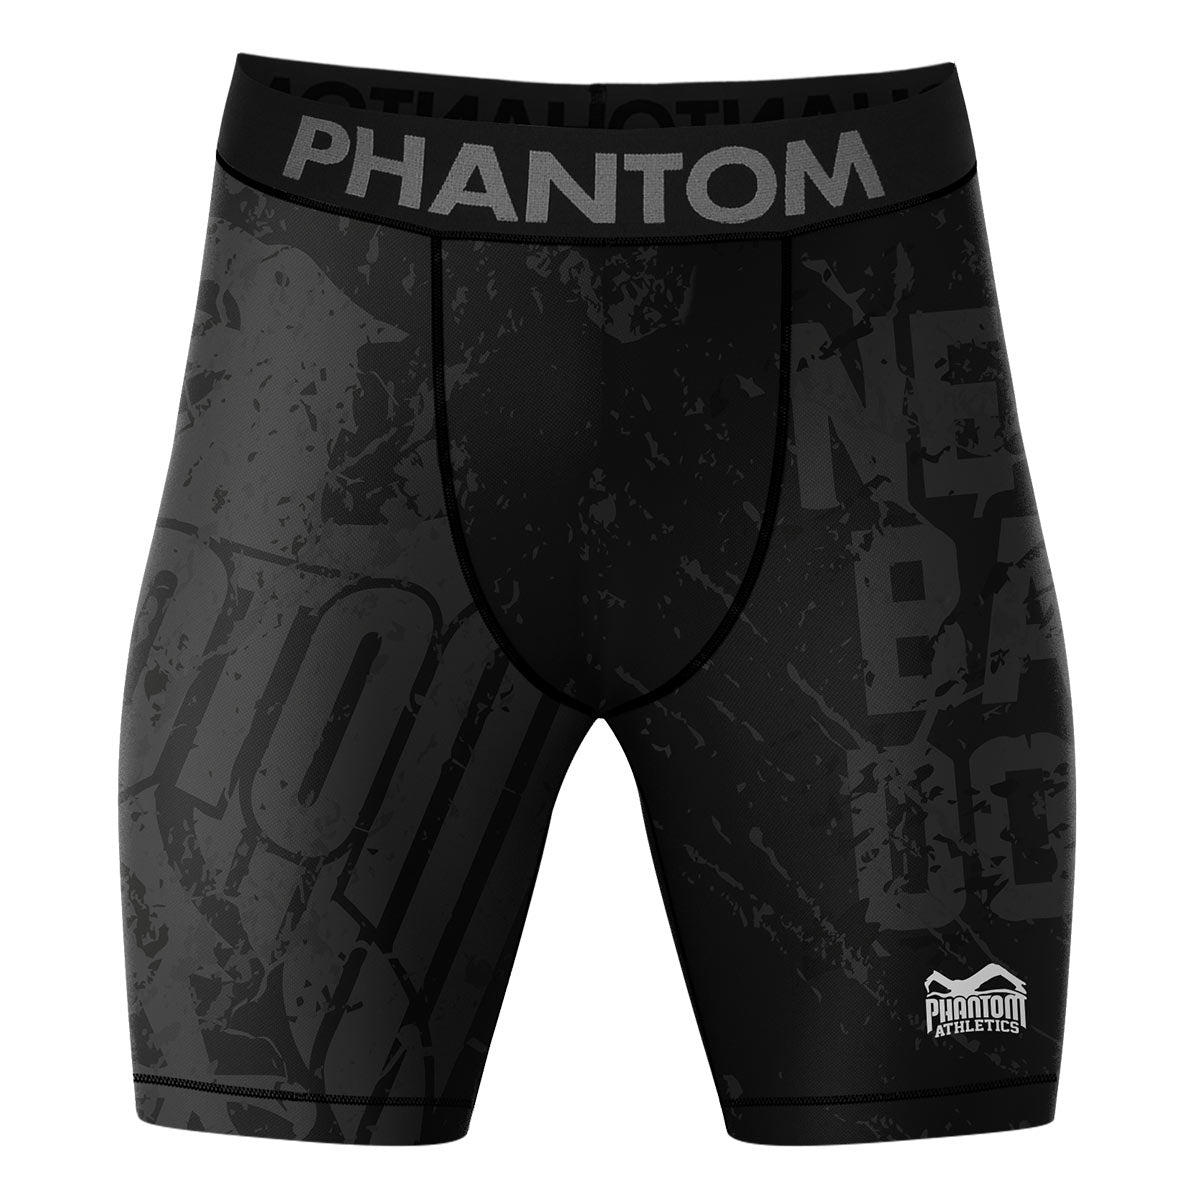 I pantaloncini da combattimento a compressione Phantom EVO nel design del Team Germany. Con aquila tedesca e scritta "Never Back Down". Ideale per i tuoi sport da combattimento, come MMA, Muay Thai, wrestling, BJJ o kickboxing.